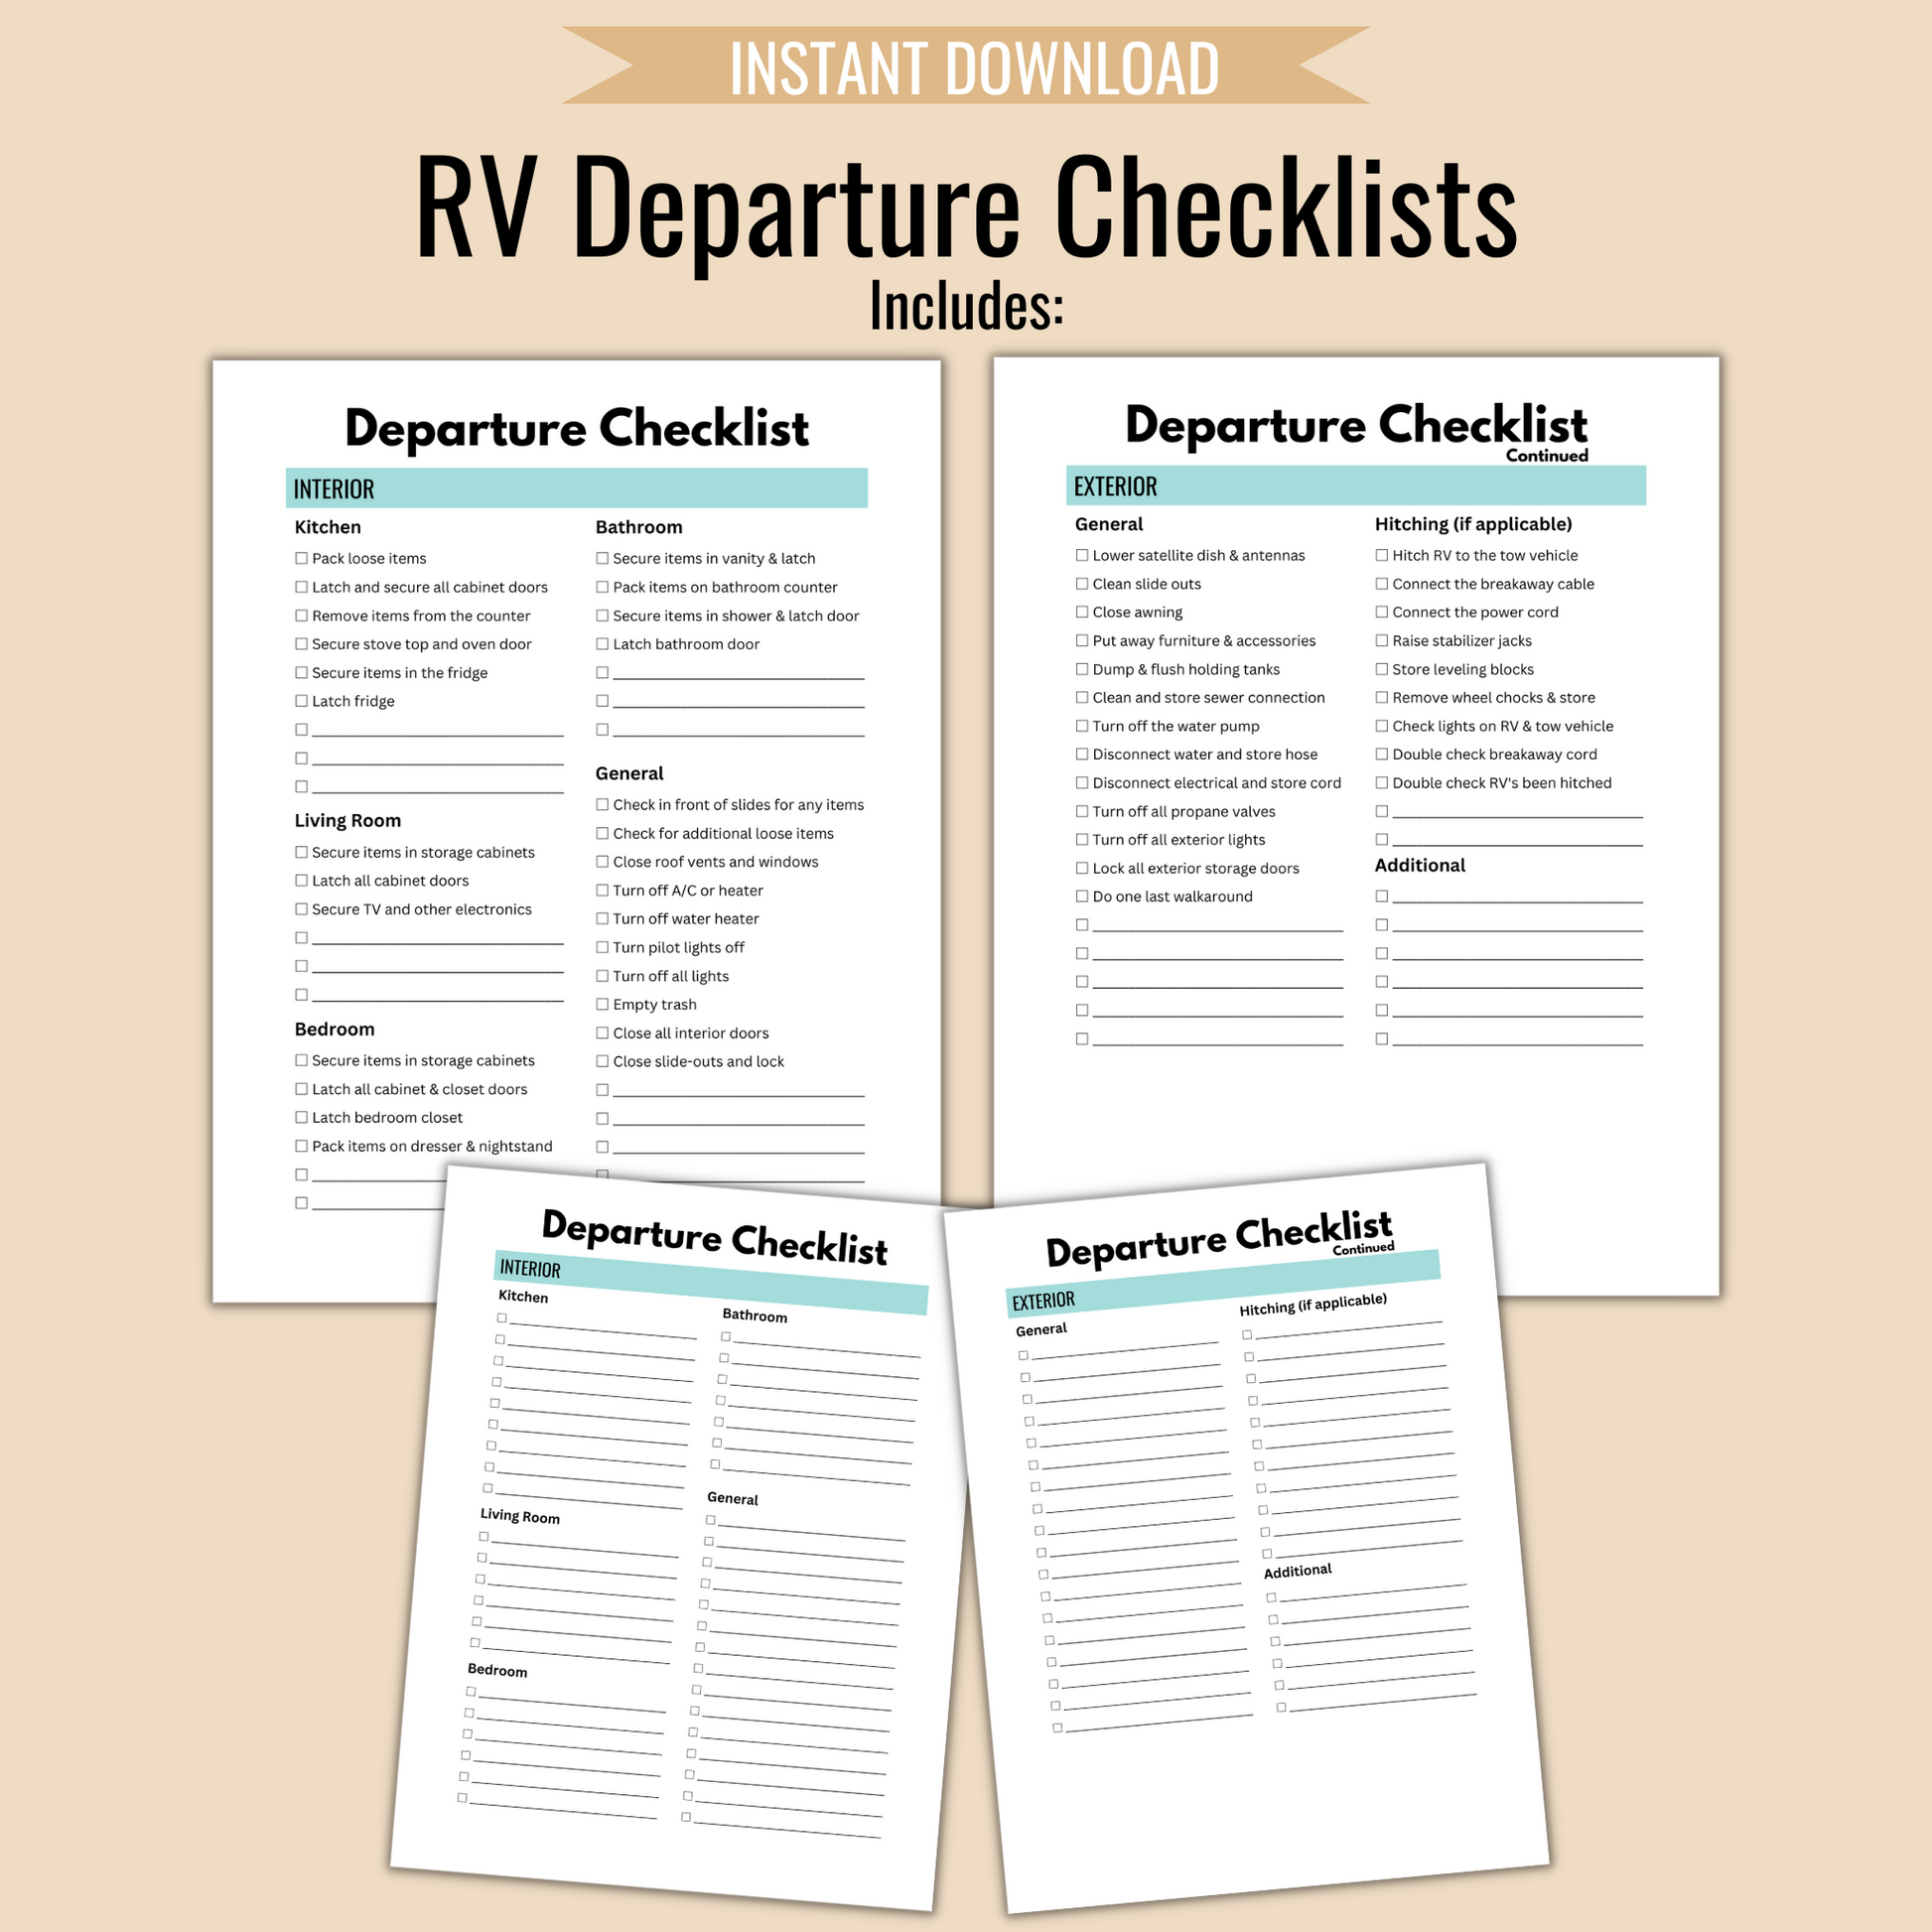 RV Departure Checklists